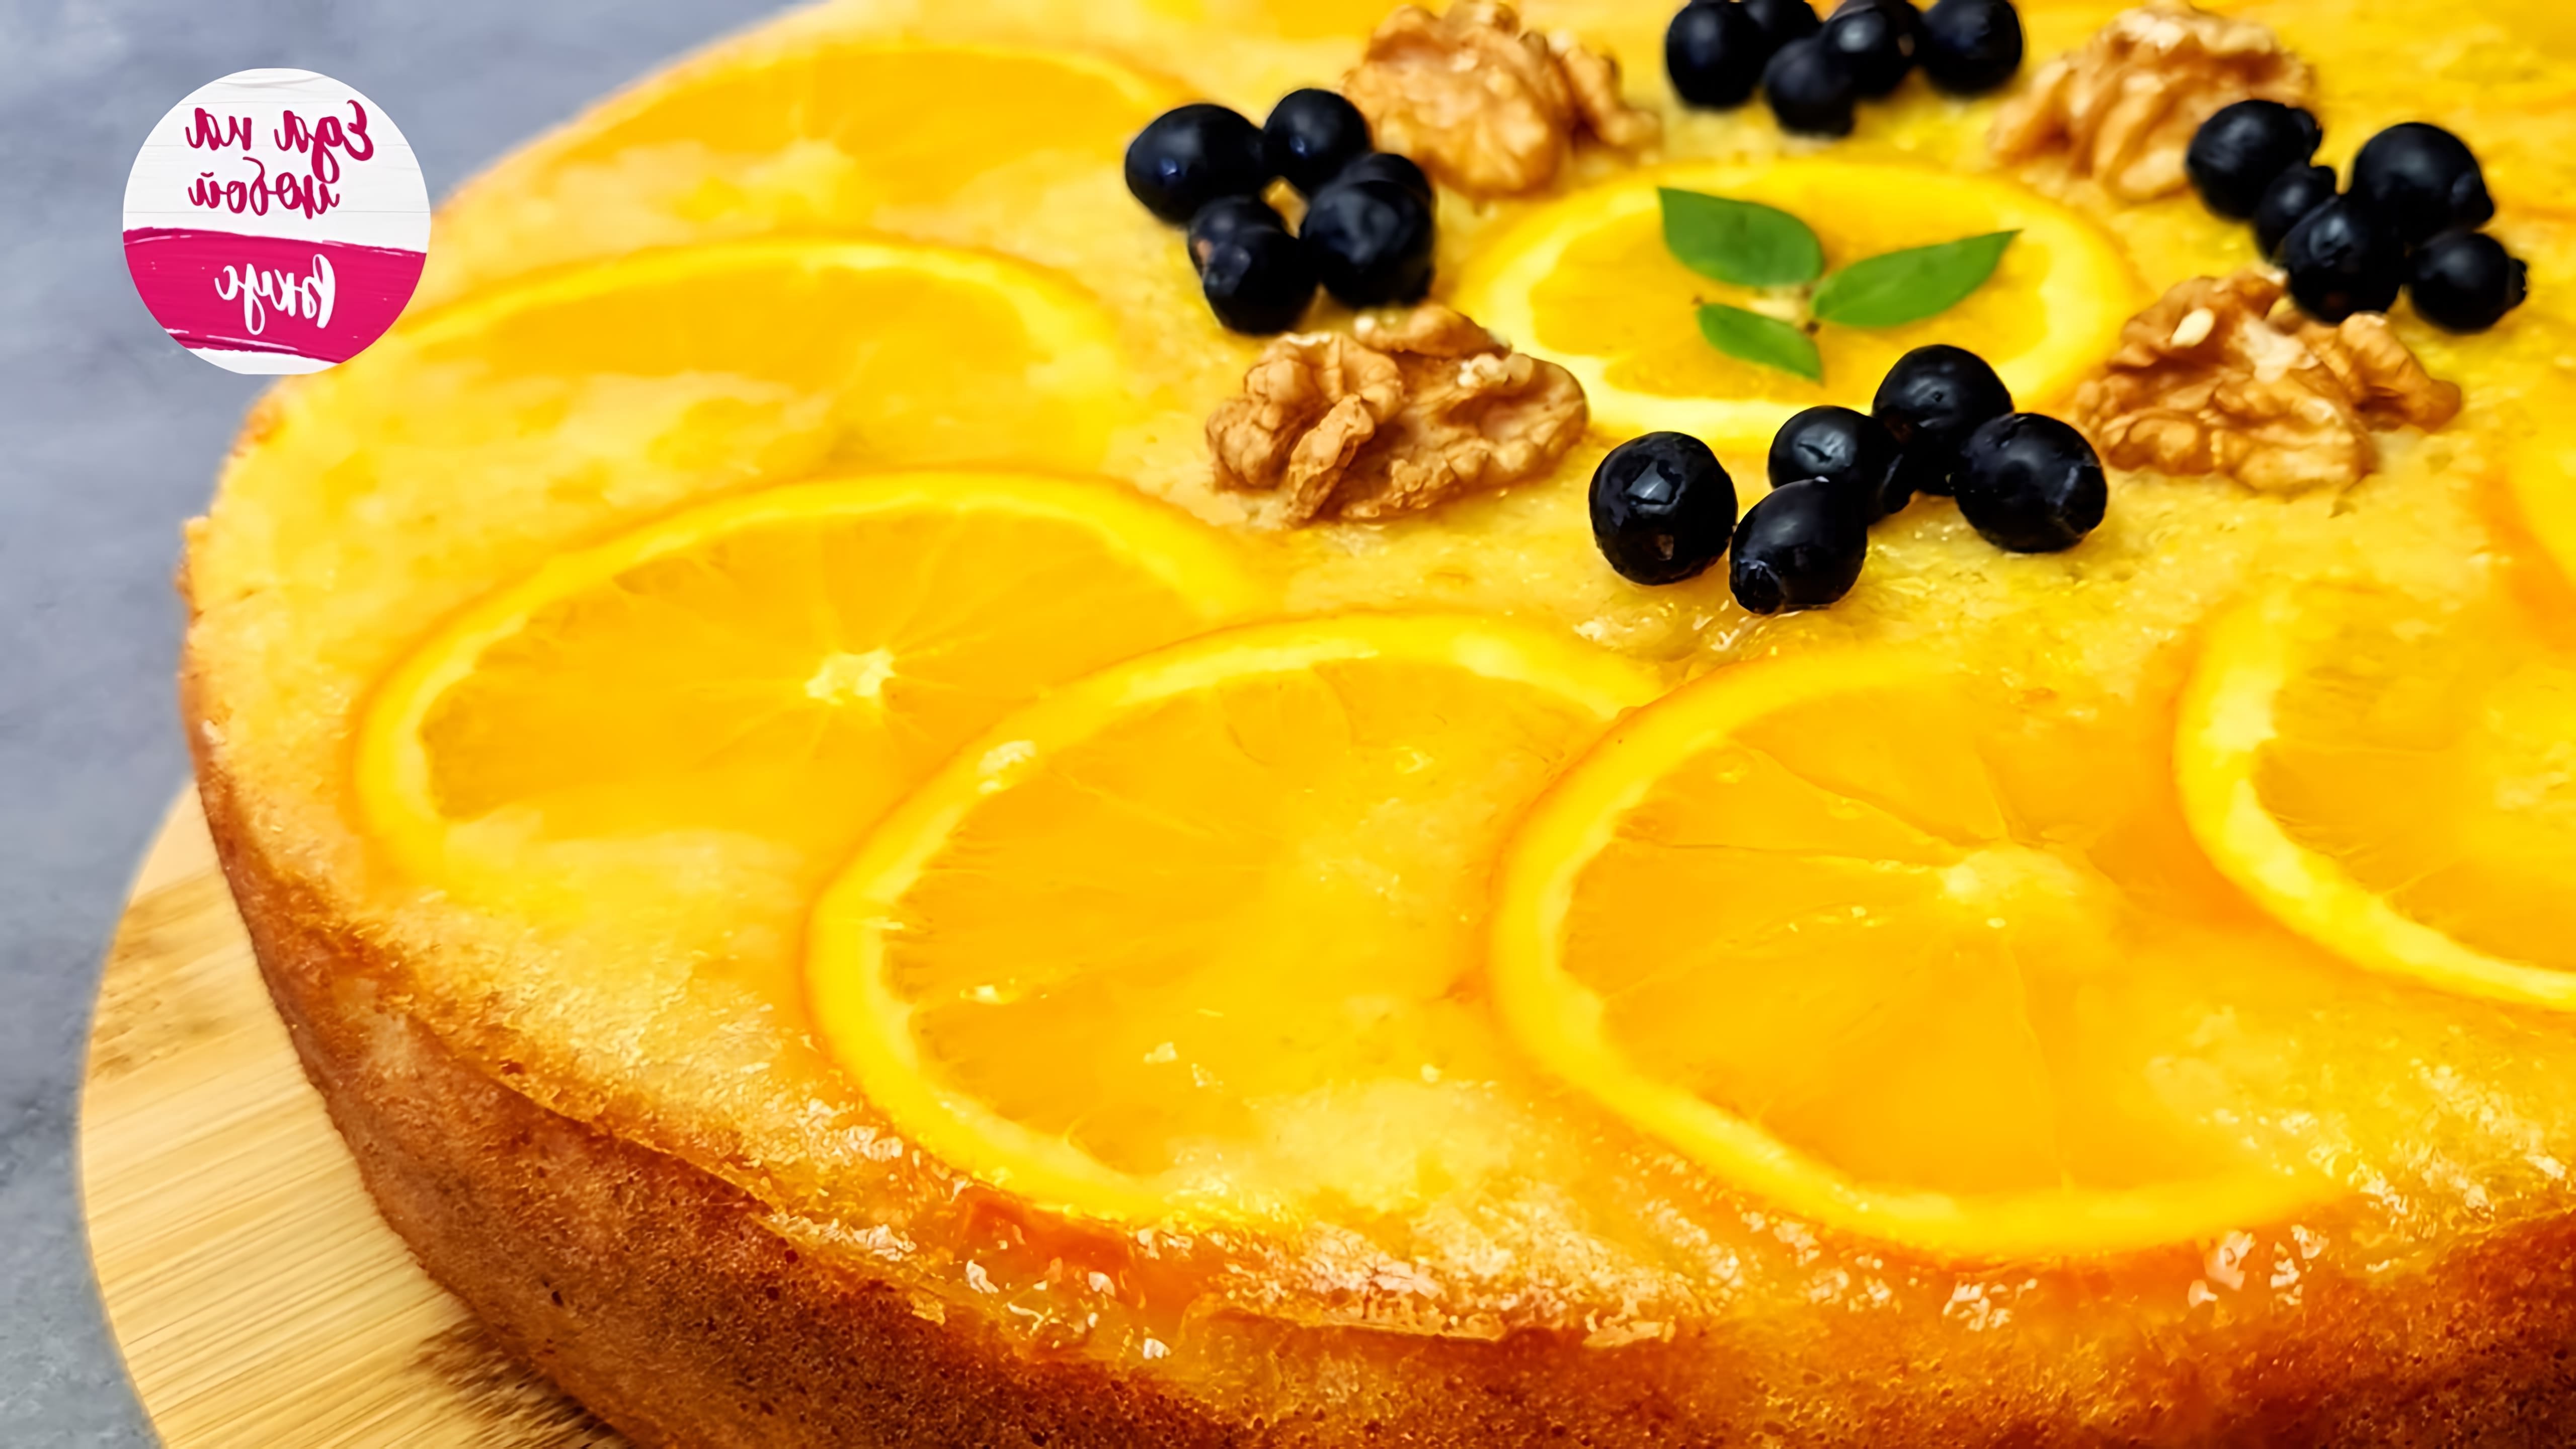 В этом видео демонстрируется процесс приготовления апельсинового перевернутого пирога